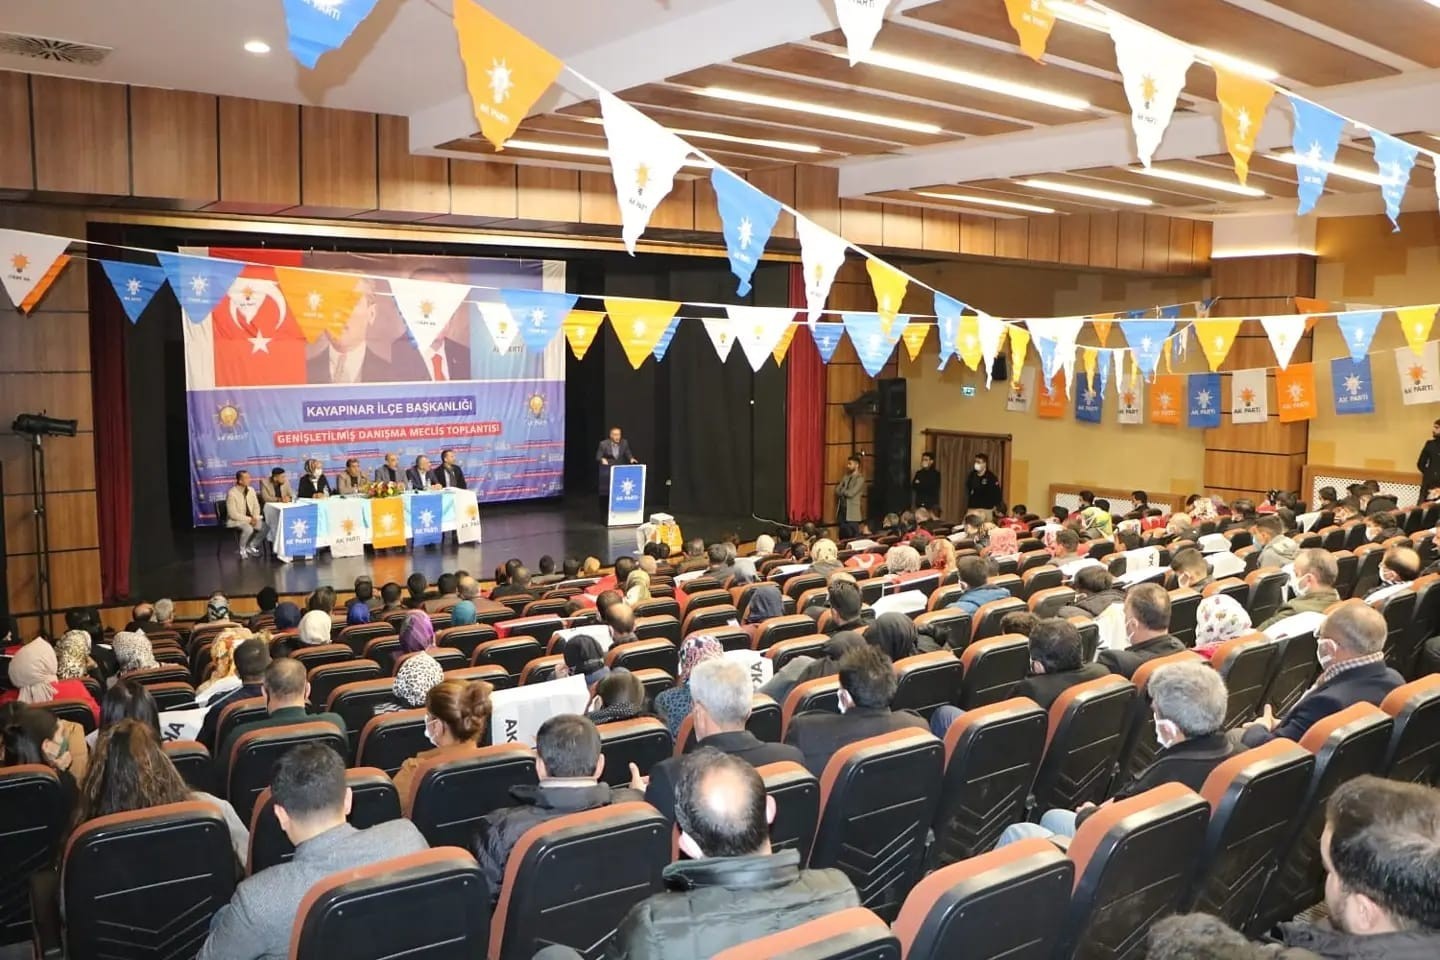 AK Parti Kayapınar ilçe danışma meclisi toplantısını gerçekleştirdi #diyarbakir